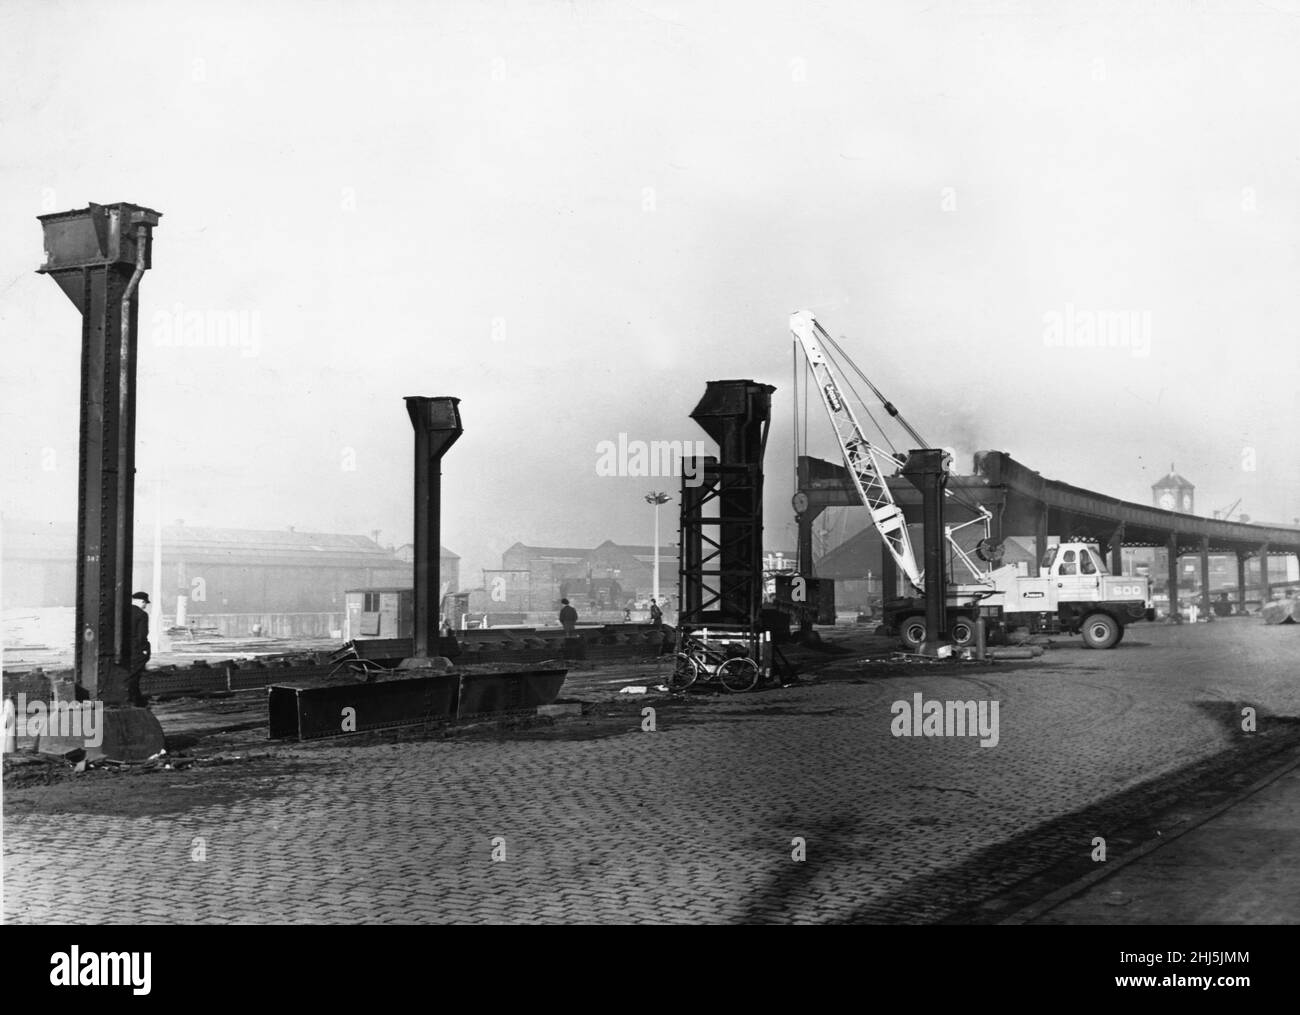 Der Abbau der Liverpool Overhead Railway. Die Bahn erstreckte sich von Dingle im Süden bis nach Seaforth & Litherland.Abriss im Norden. Der Abriss der Struktur begann am 23. September 1957, und alle 80 Acres erhöhten Gleise wurden bis Januar des folgenden Jahres entfernt. Dieses Bild wurde am Herculaneum Dock aufgenommen, wo 250 Fuß Abschnitte der oberen Stahlkonstruktion entfernt wurden. Bild datiert: 26th. September 1957. Stockfoto